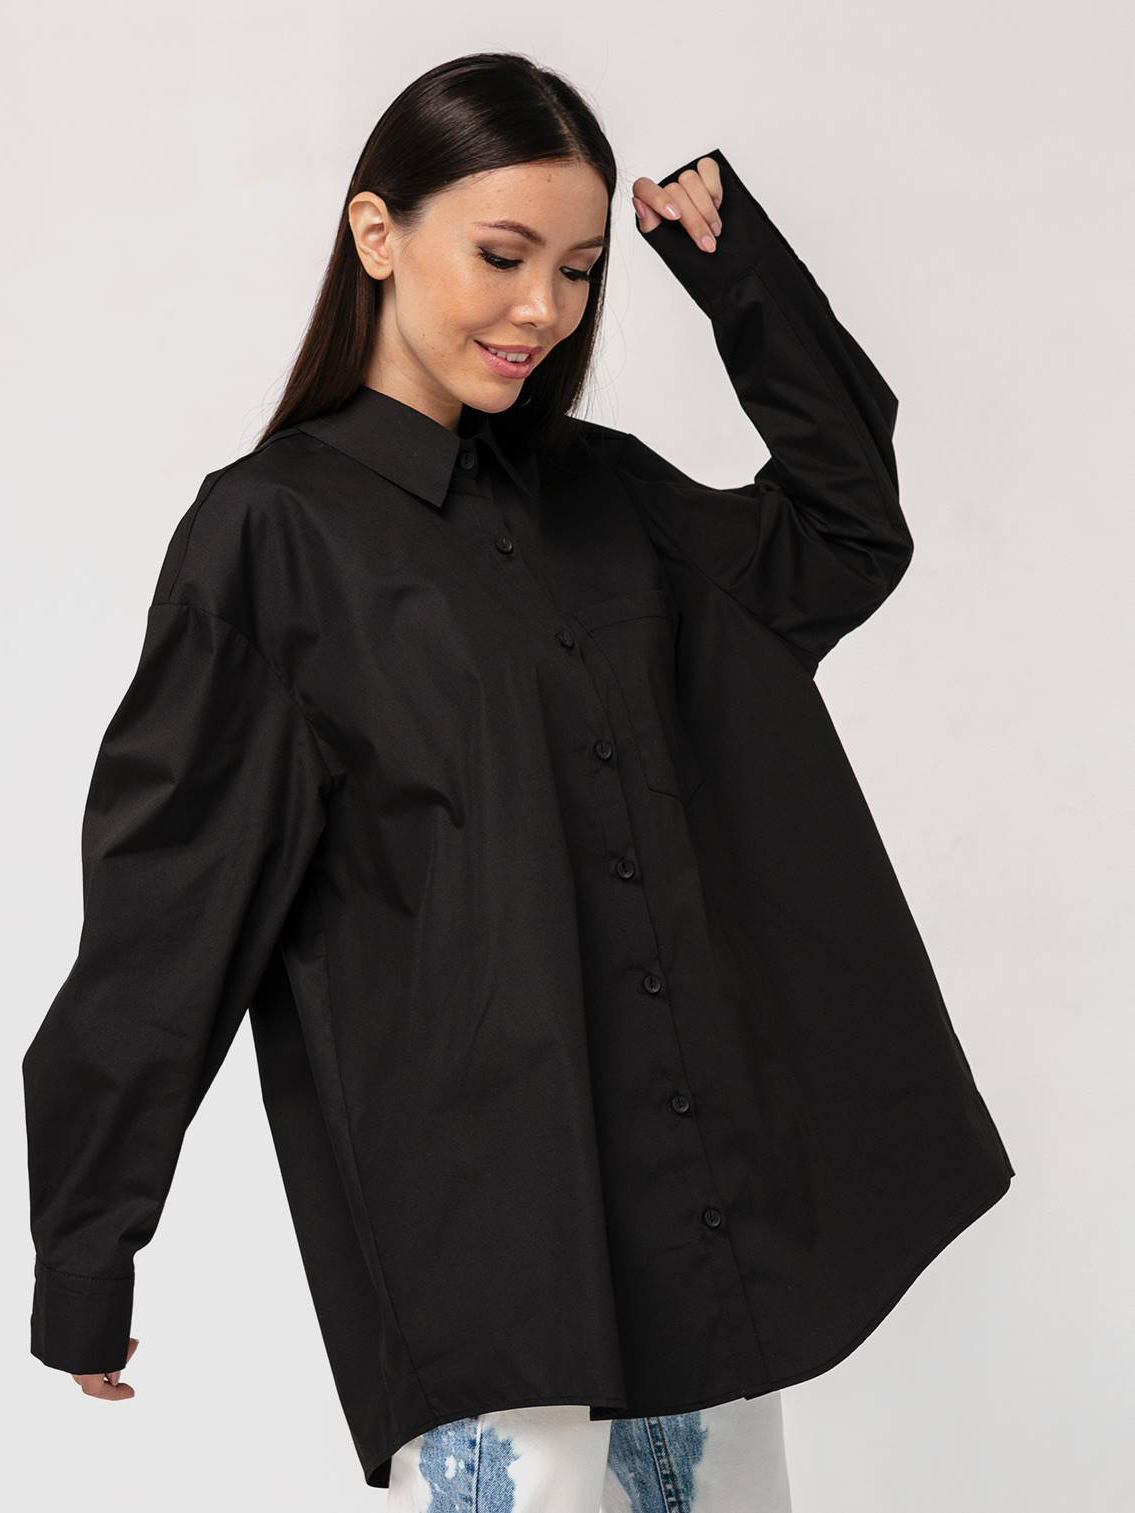 Хлопковая рубашка бойфренда черная с длинными рукавами YOS от украинского бренда Your Own Style